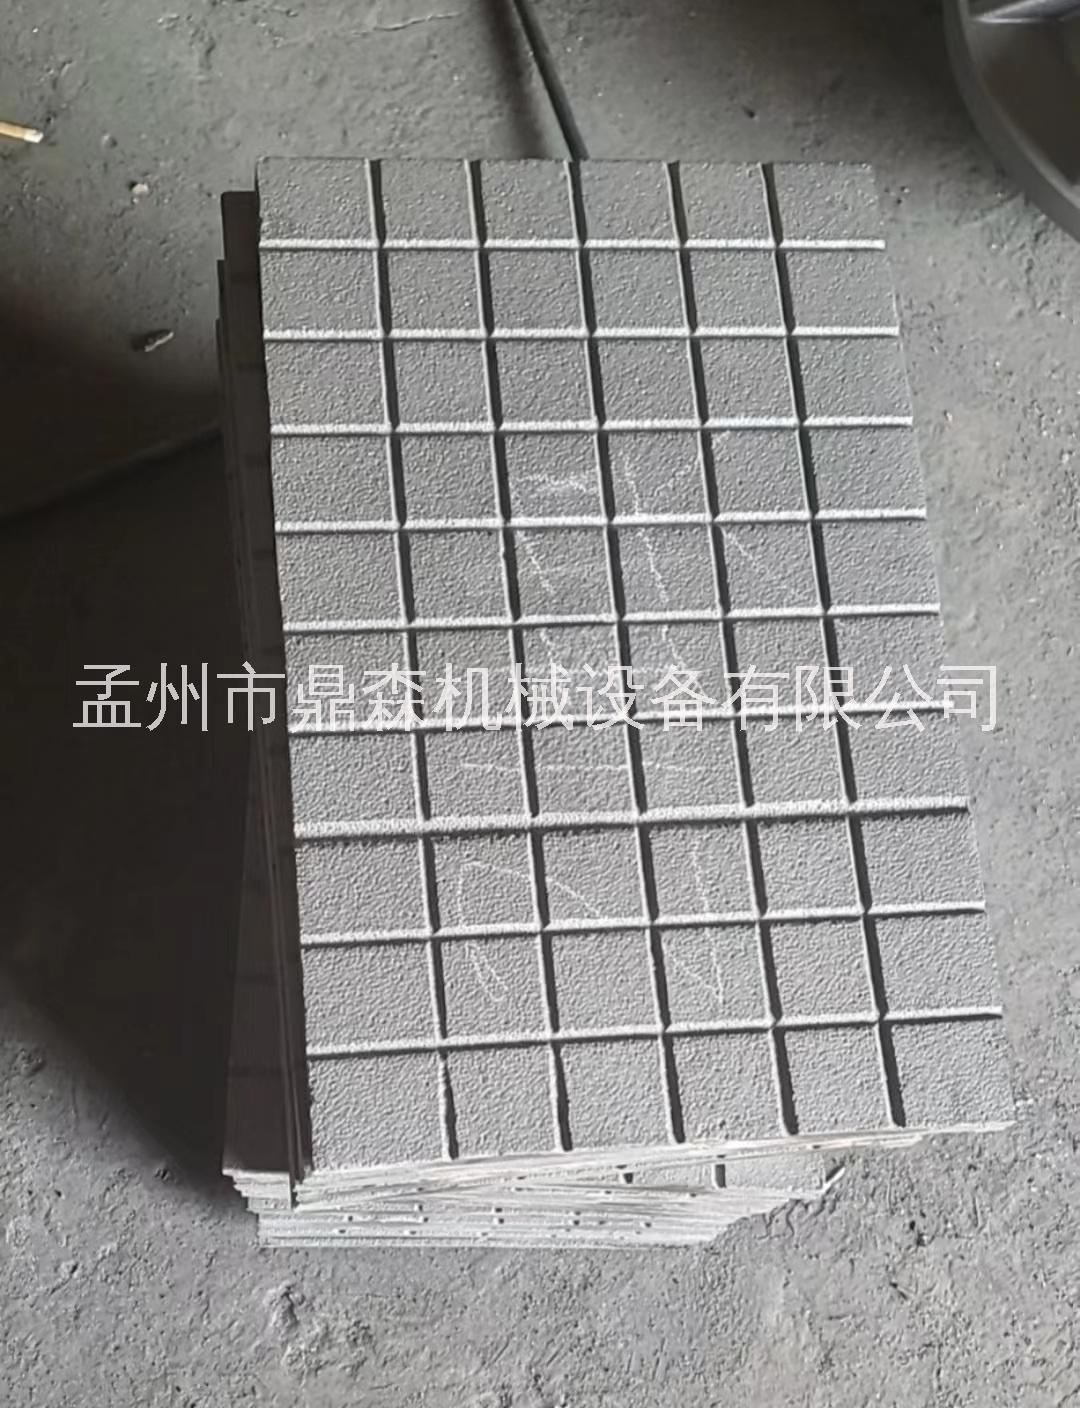 焦作市焦化配件--铸铁板-HT150铸铁板厂家